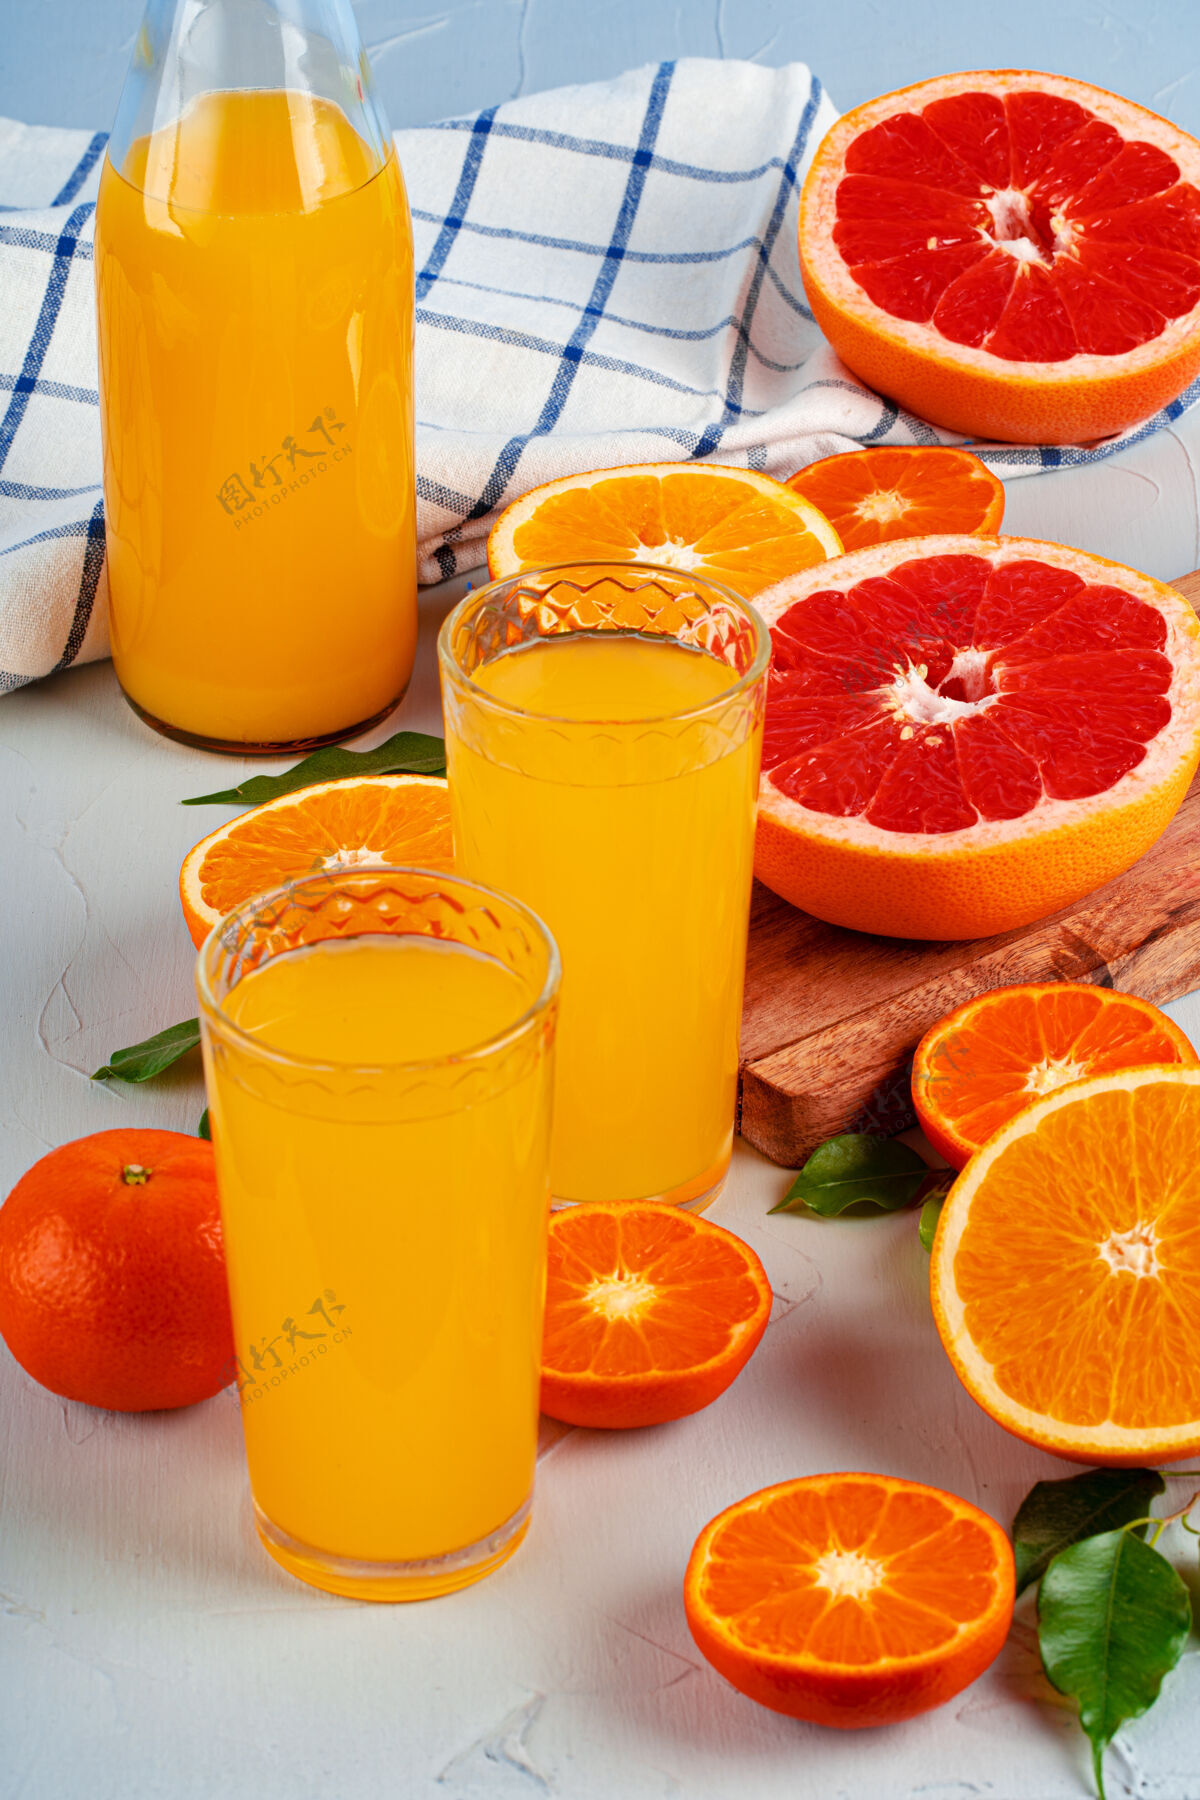 液体桌上摆着一瓶橙汁和新鲜橙子宏瓶装多汁